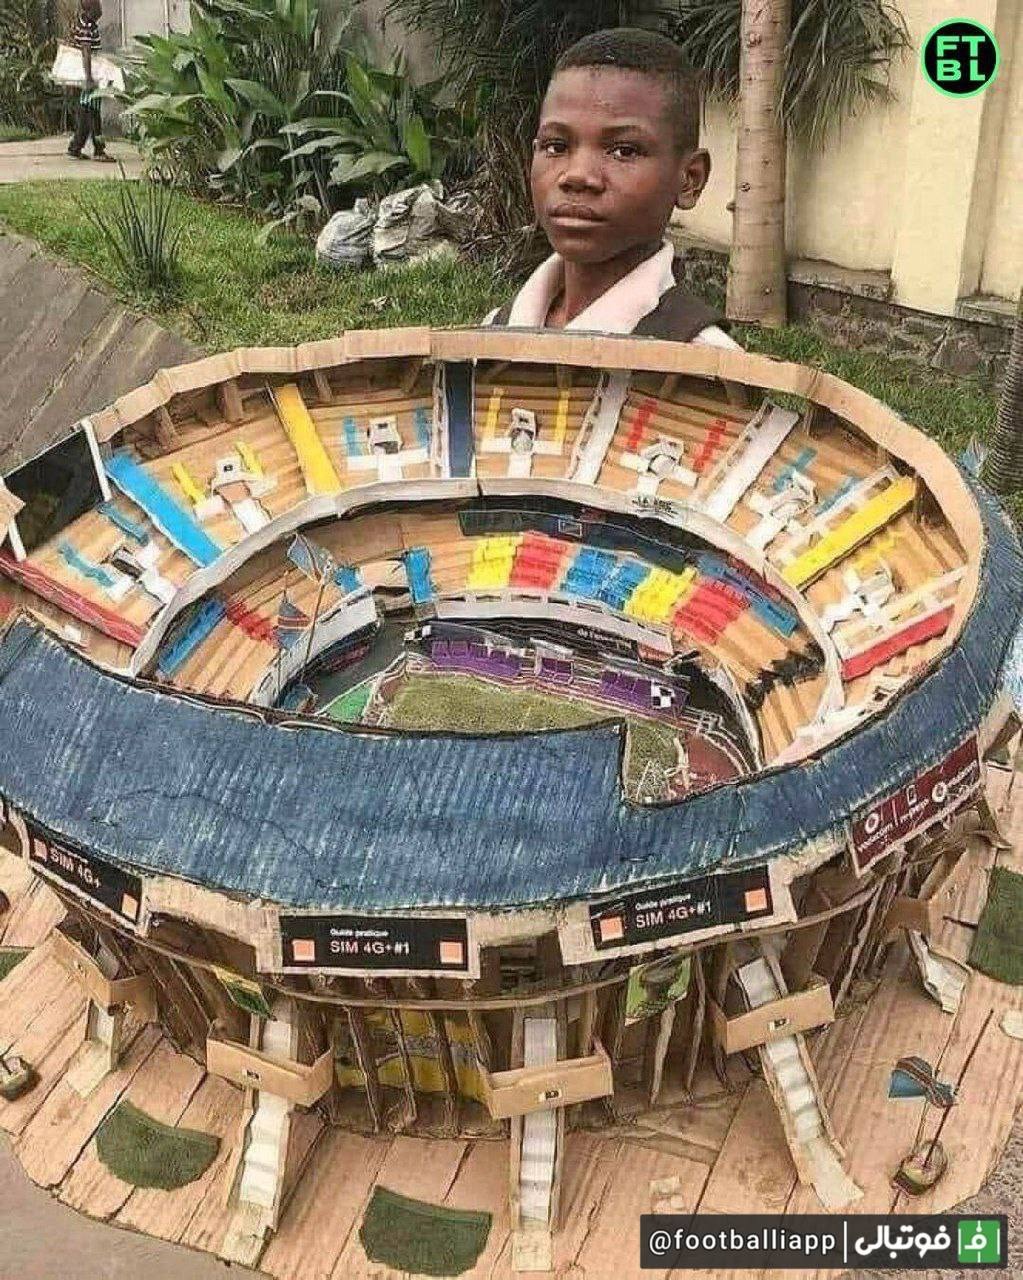 کودکی ۱۱ ساله اهل کنگو که رویای معمار شدن را در سر دارد با حداقل ابزار موجود، ماکتی زیبا از یکی از ورزشگاه‌های کشورش ساخته که سوژه شبکه های اجتماعی شده است